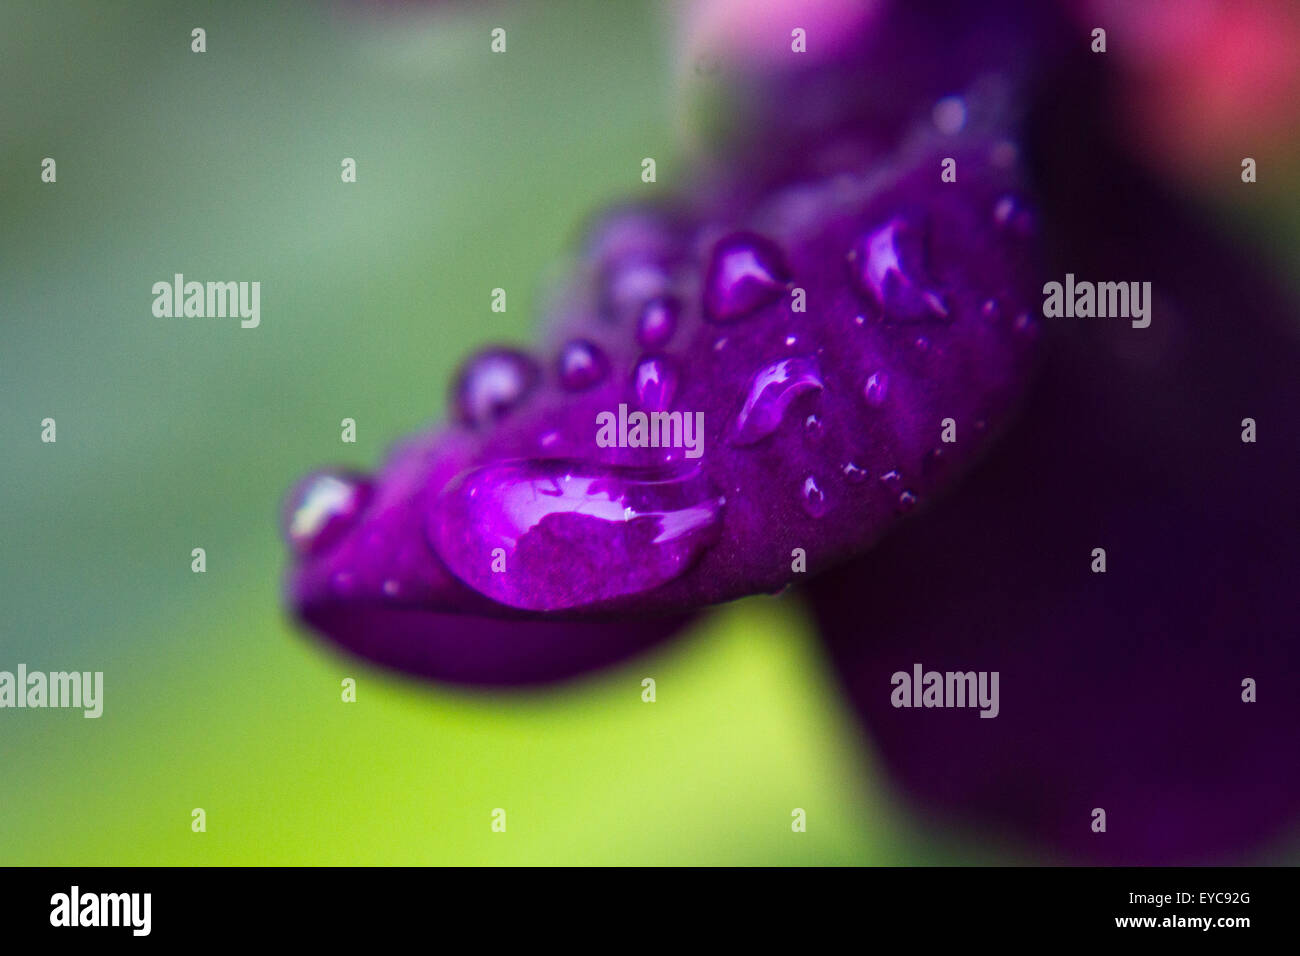 macro dew drops on purple flower petal Stock Photo